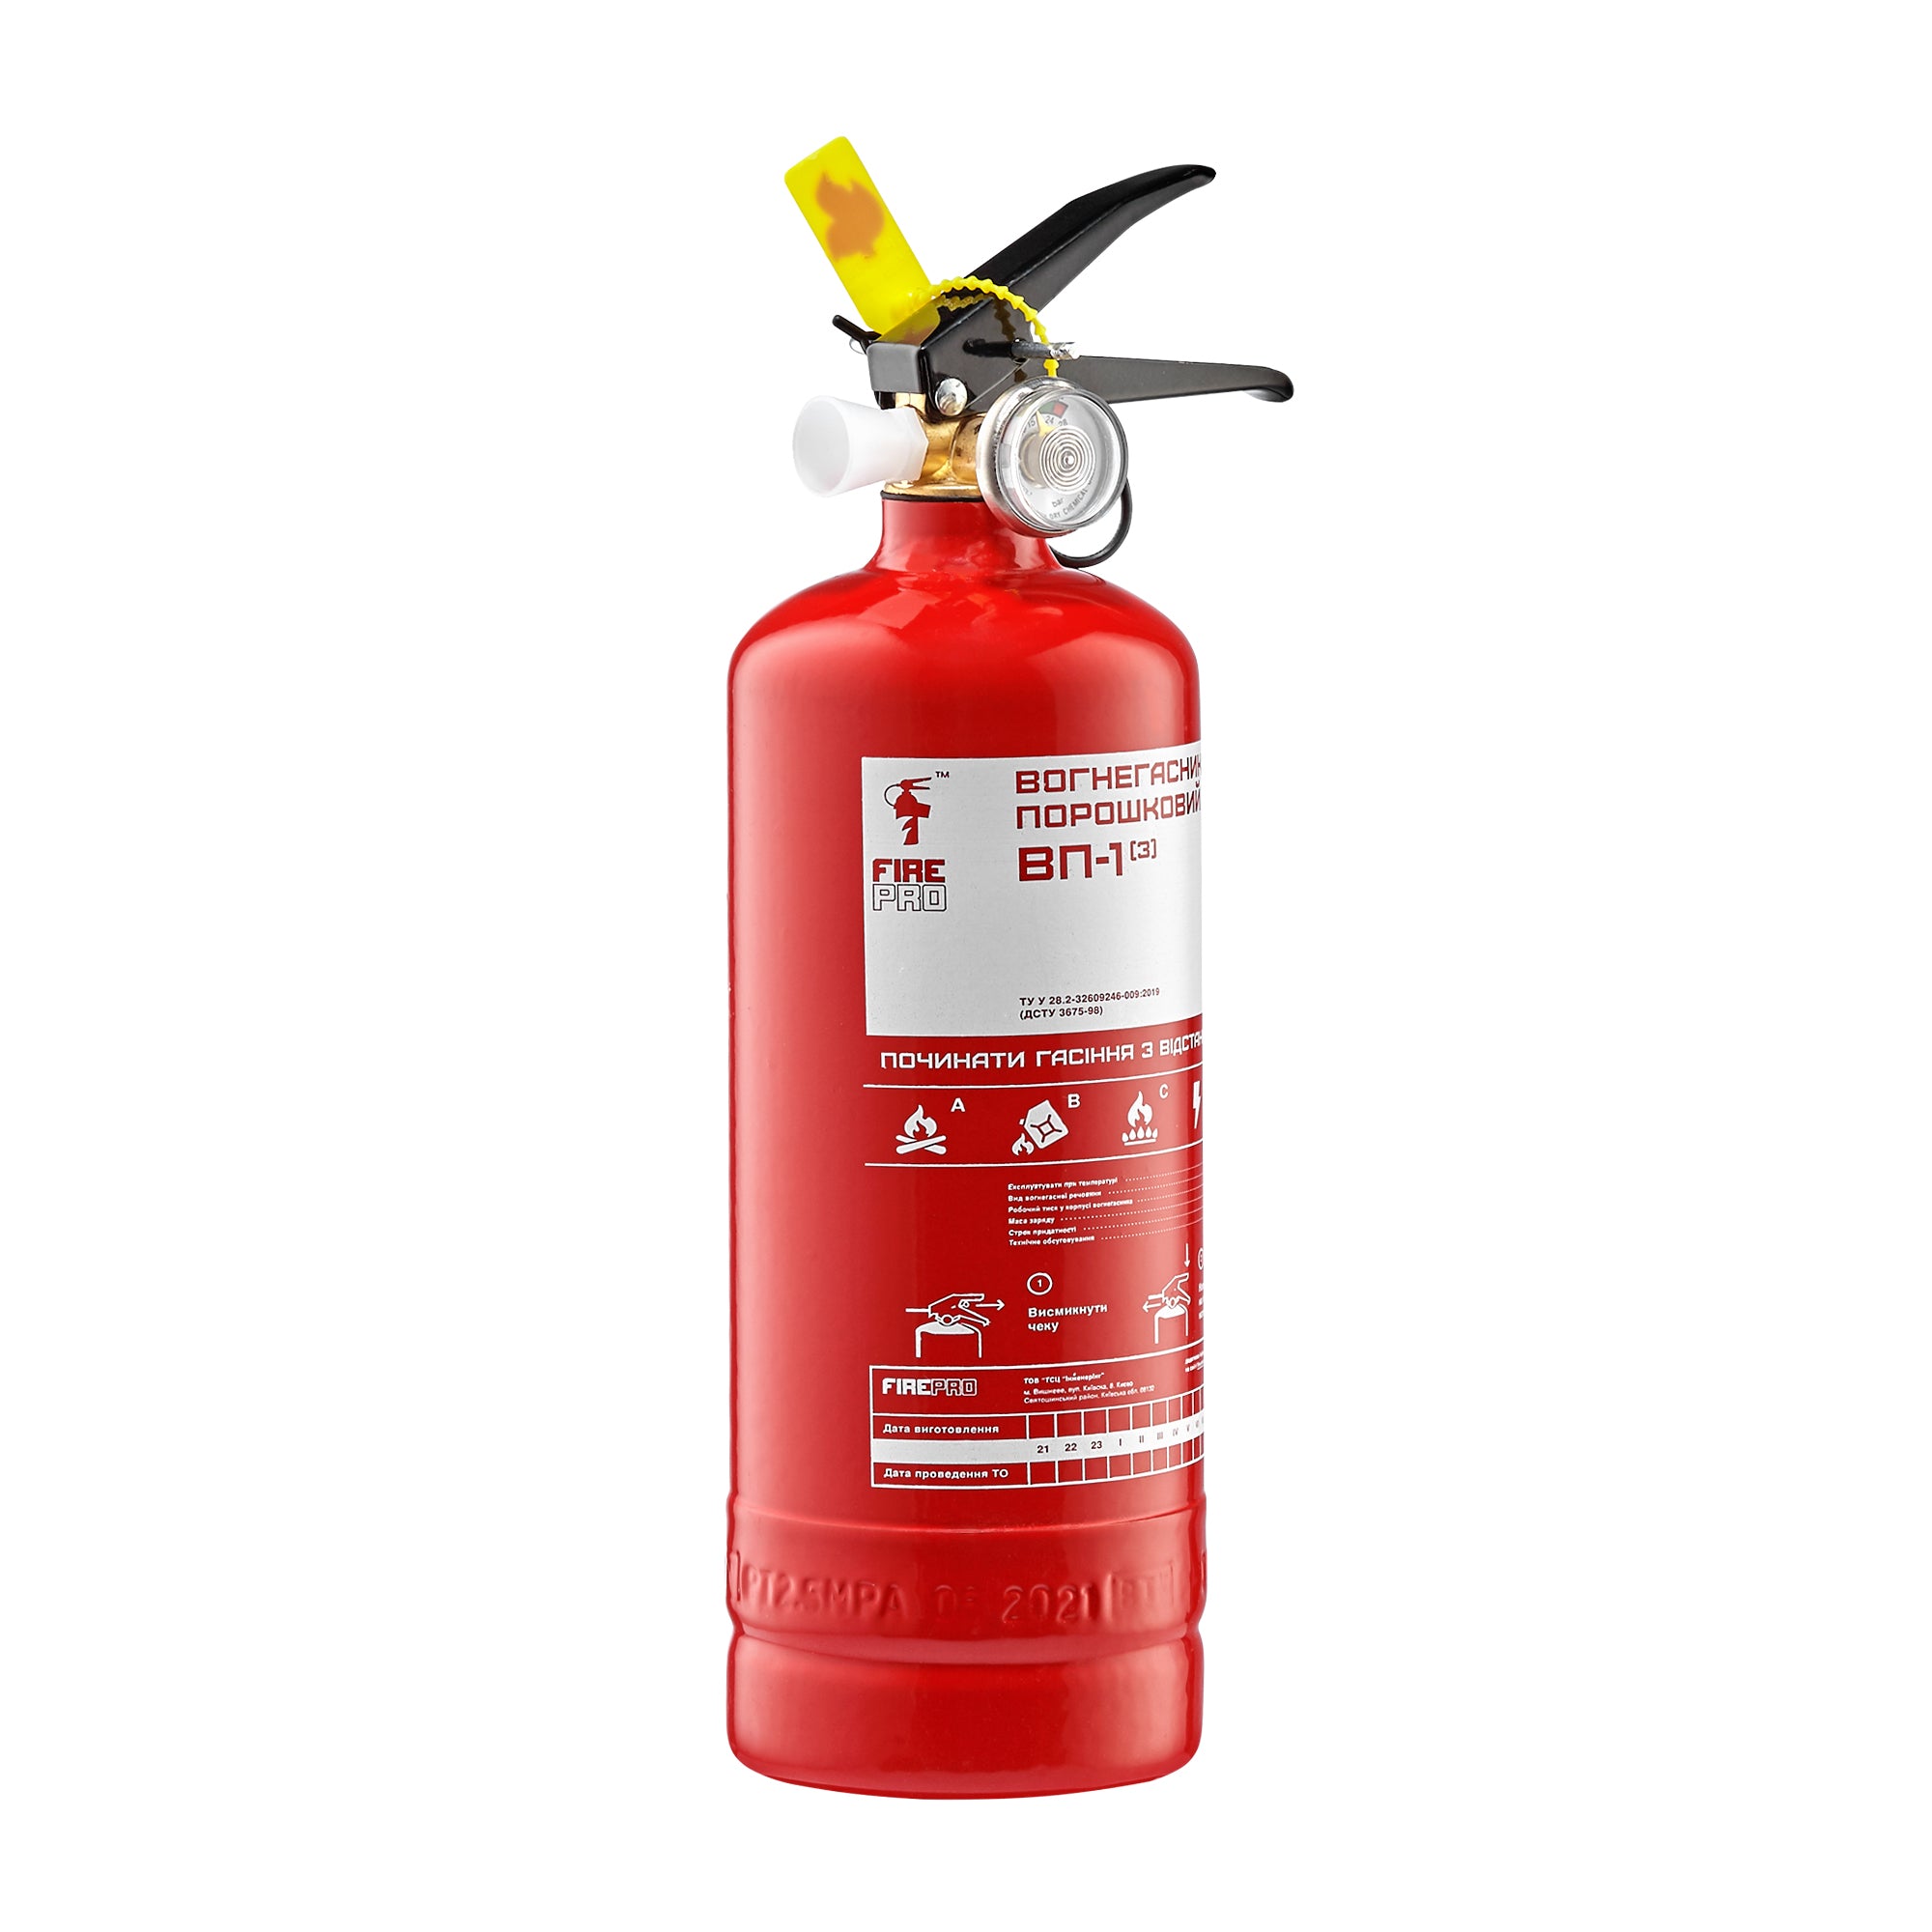  порошковый огнетушитель от производителя | Fire Pro